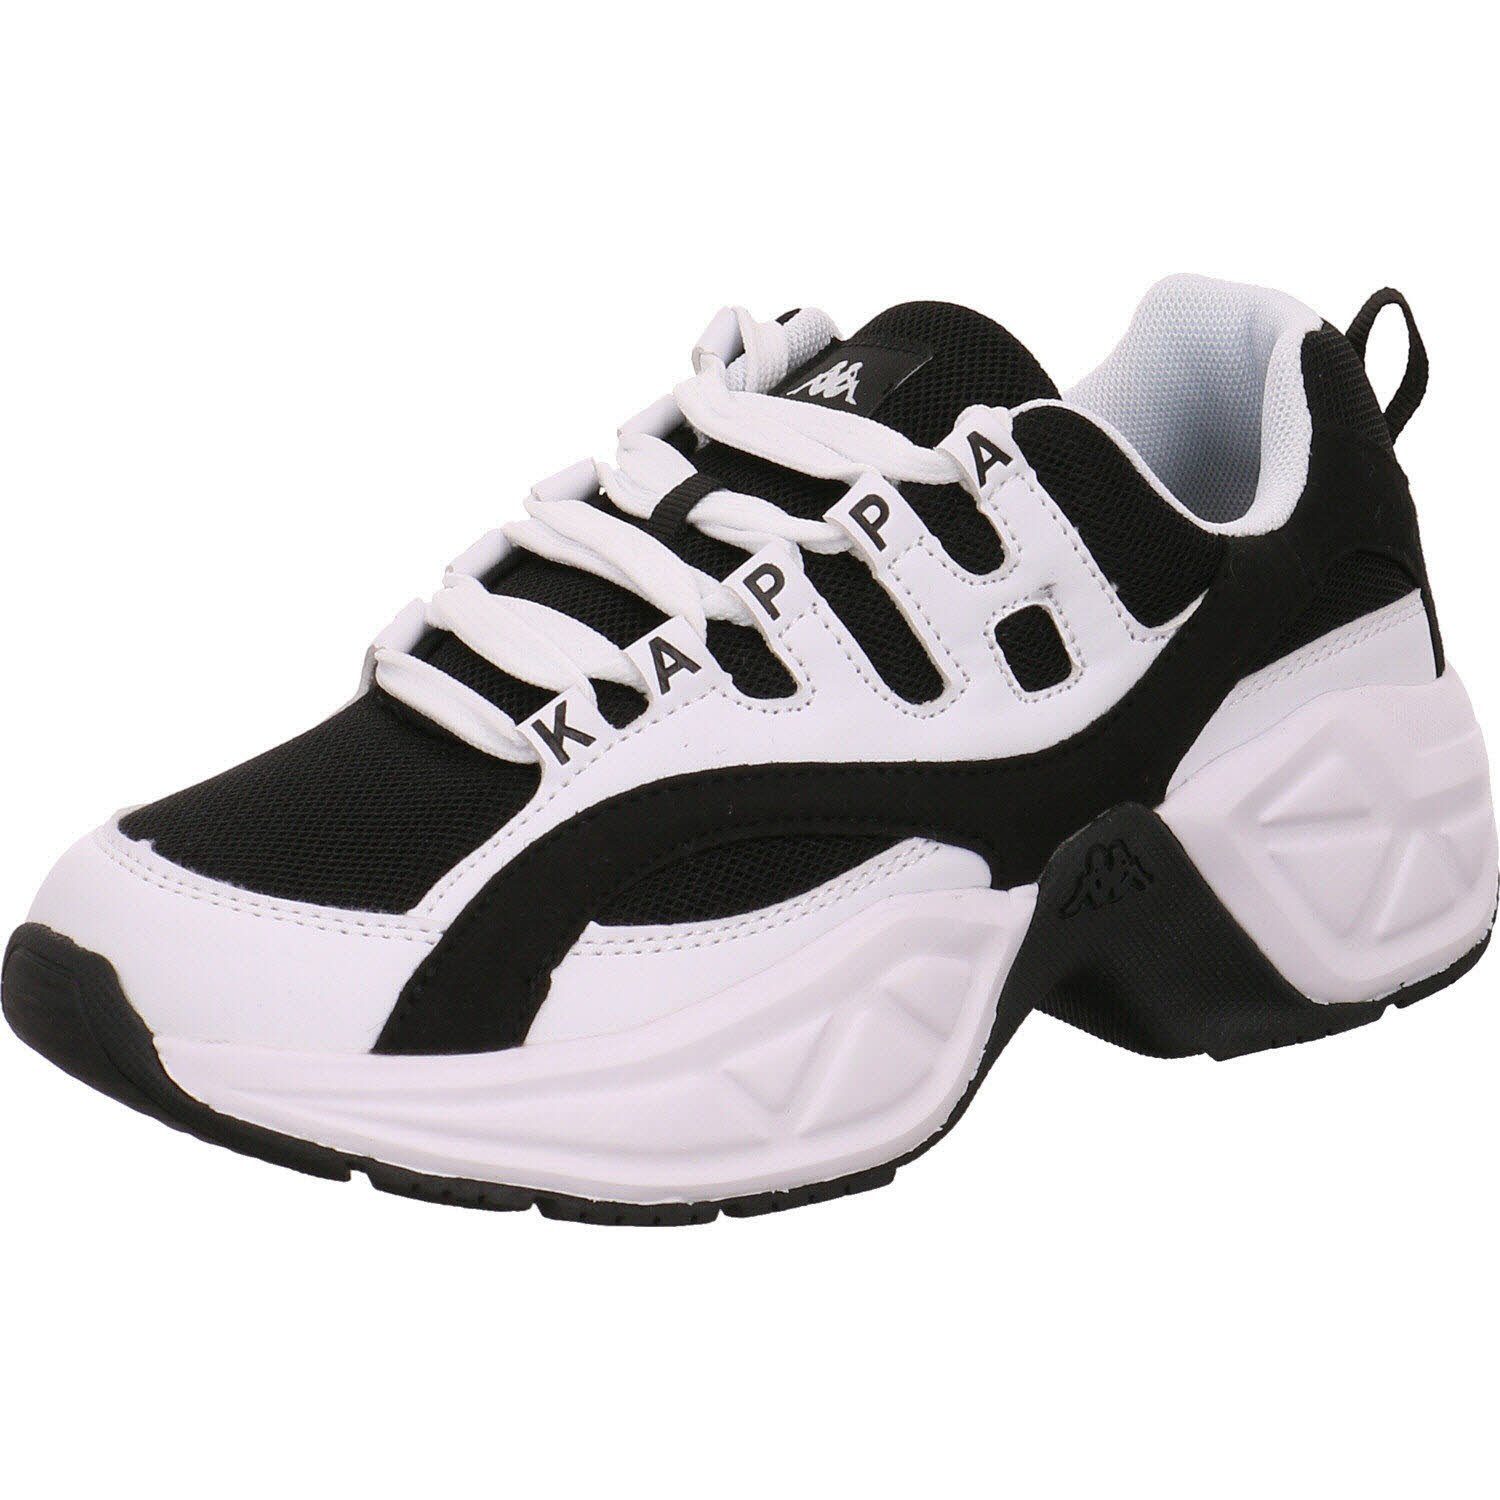 Stylecode: Overton Kappa Sneaker 242672